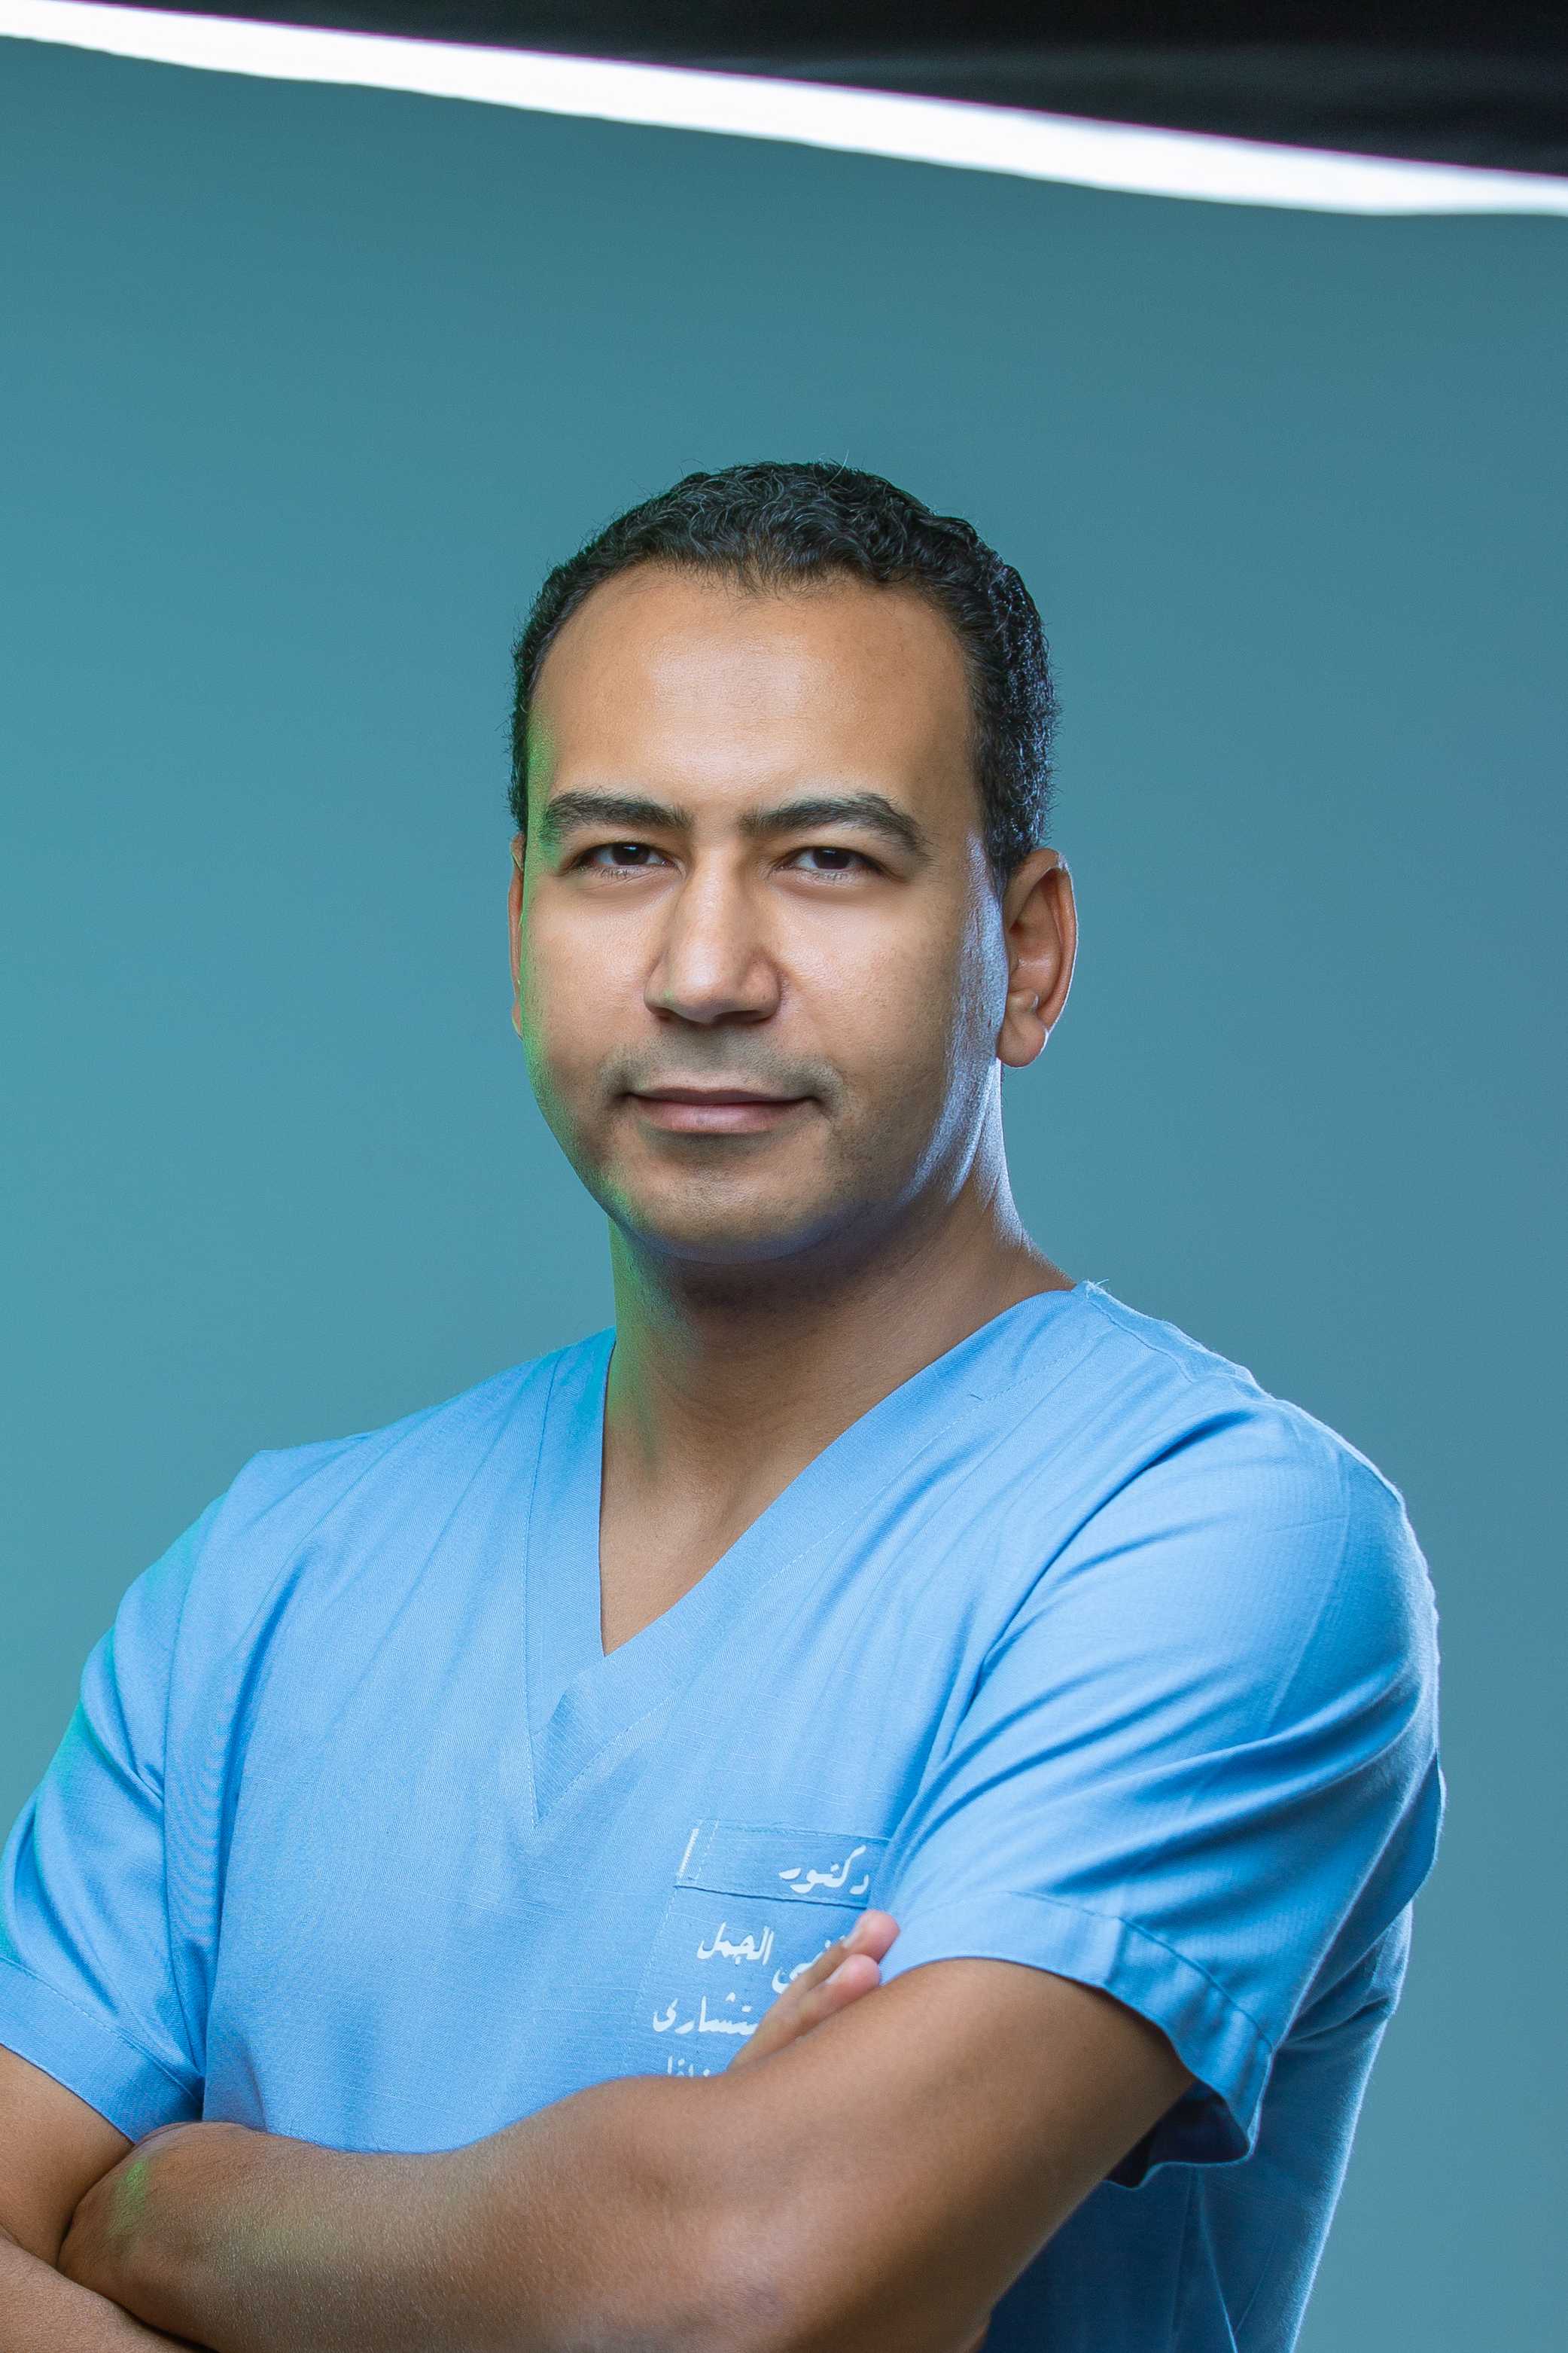 Dr. Mustafa Elgamal